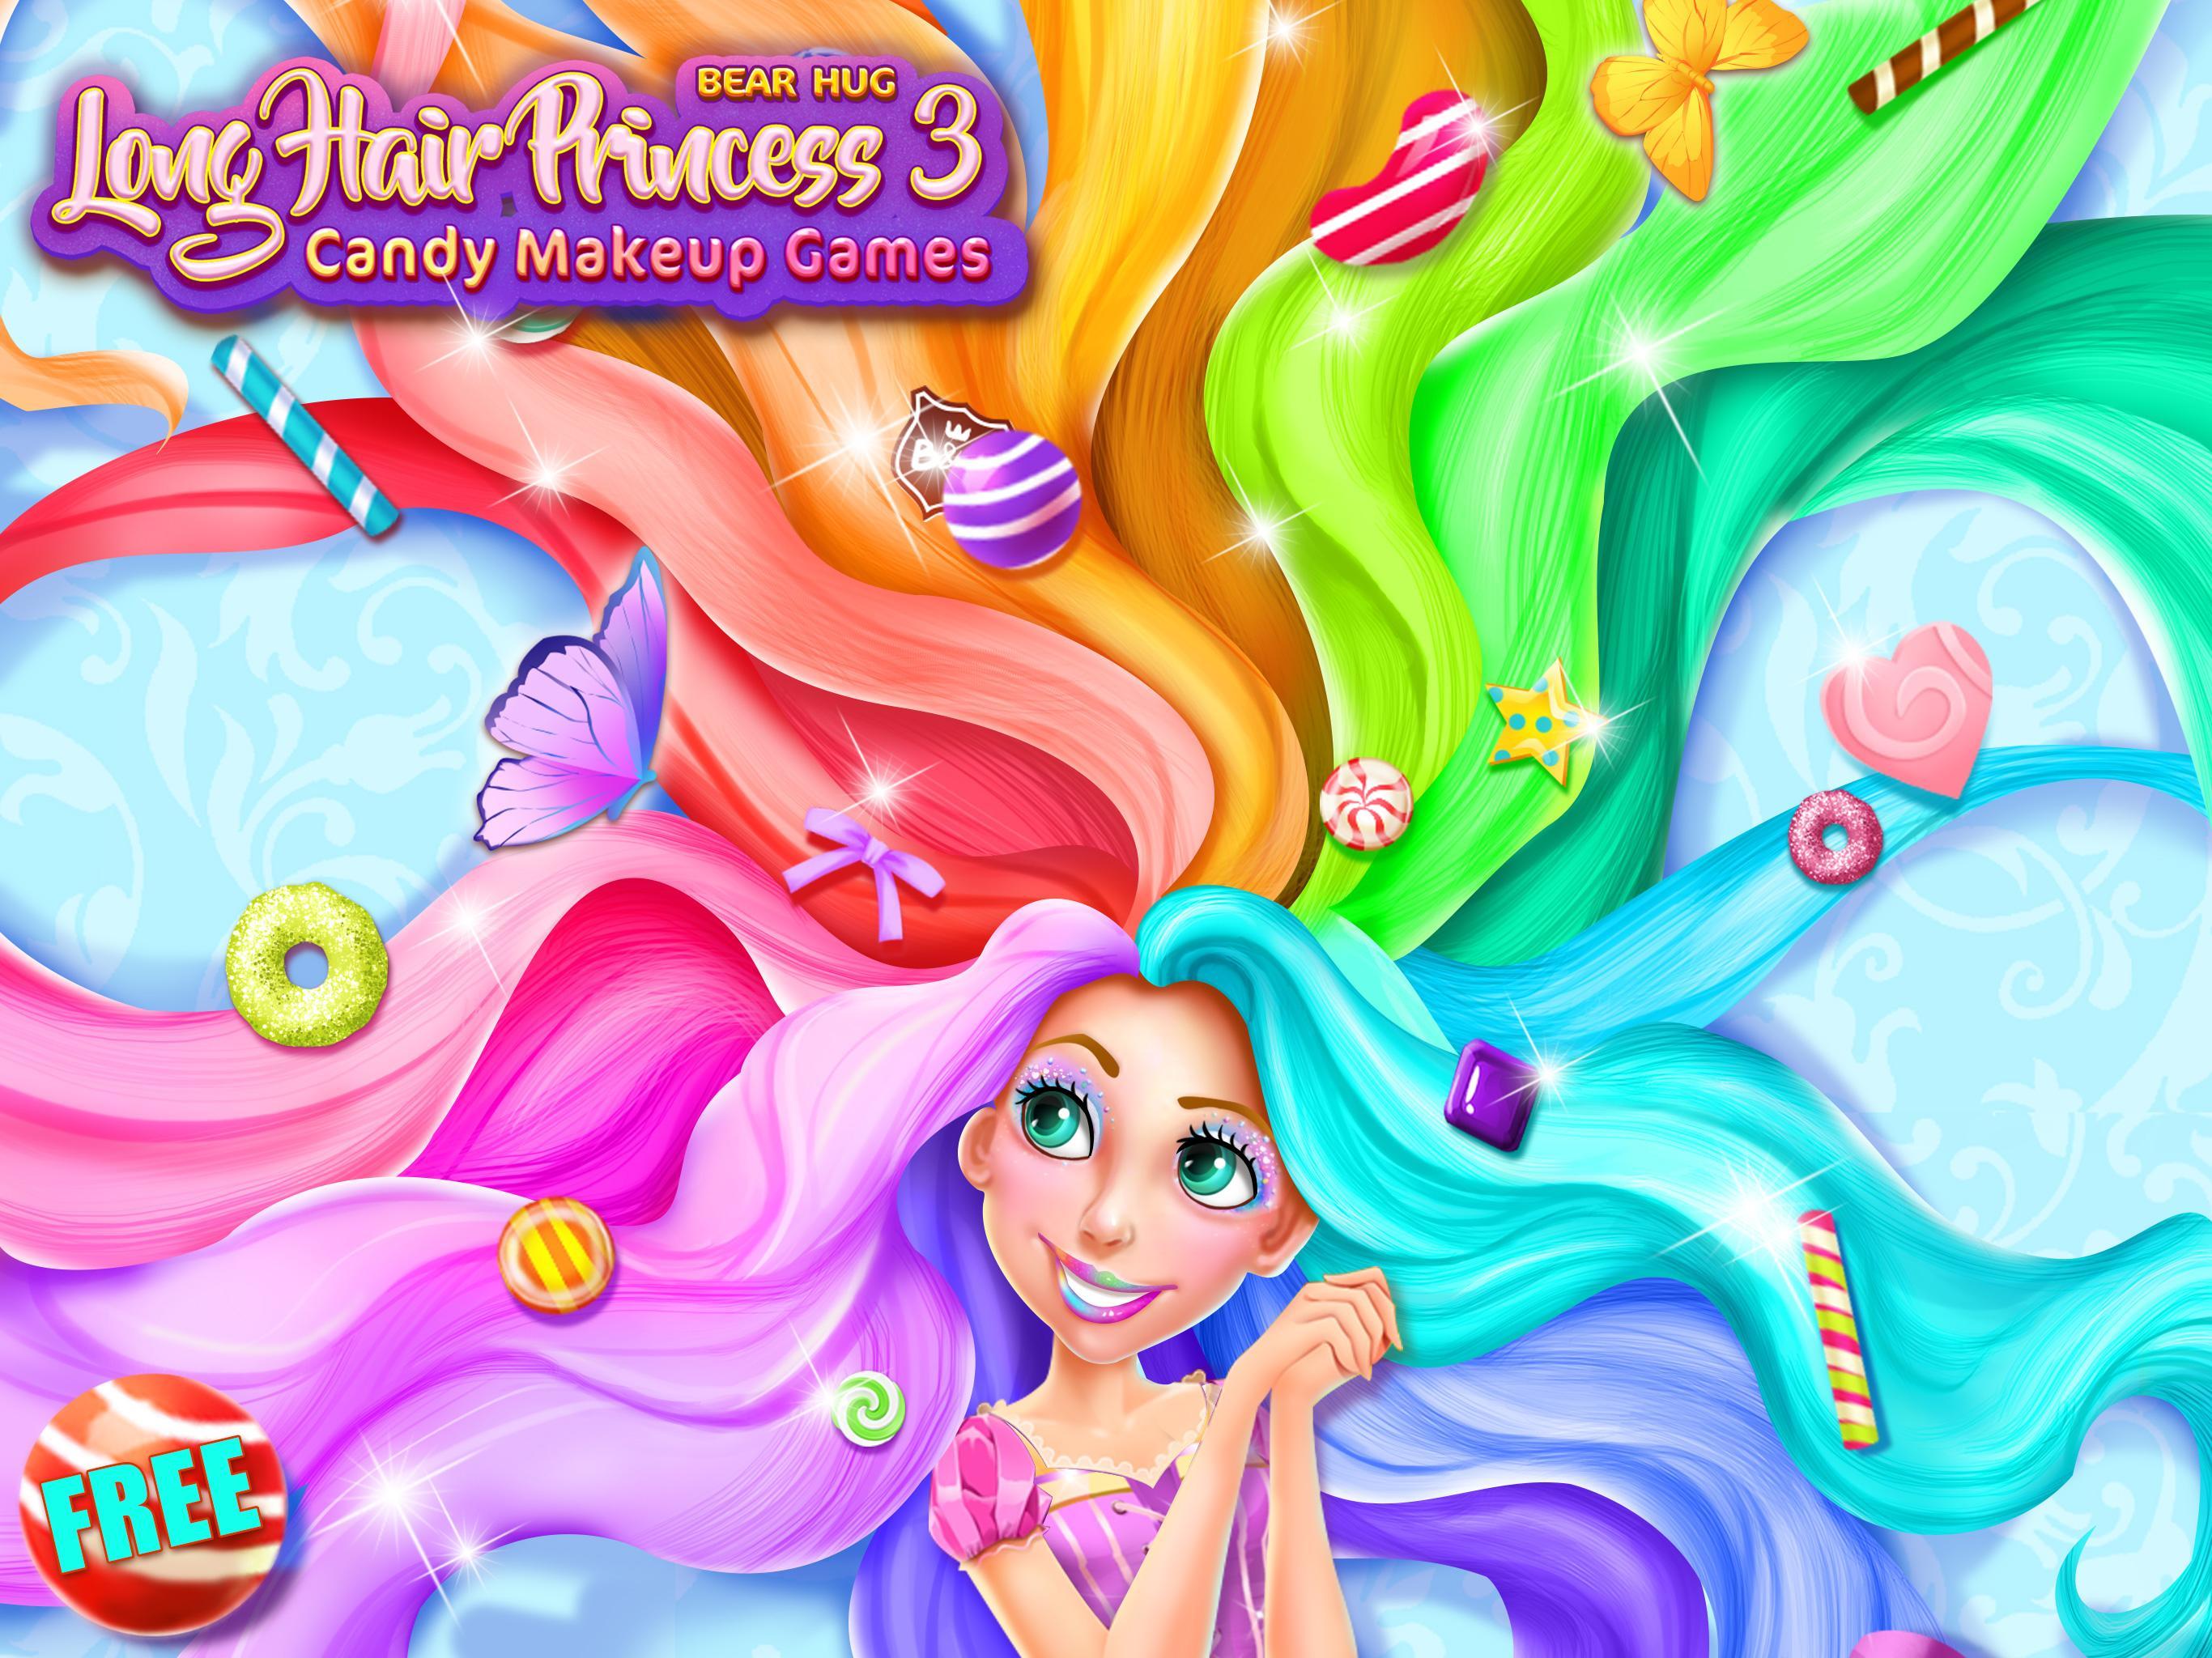 Screenshot 1 of Конфетный салон принцессы с длинными волосами 1.1